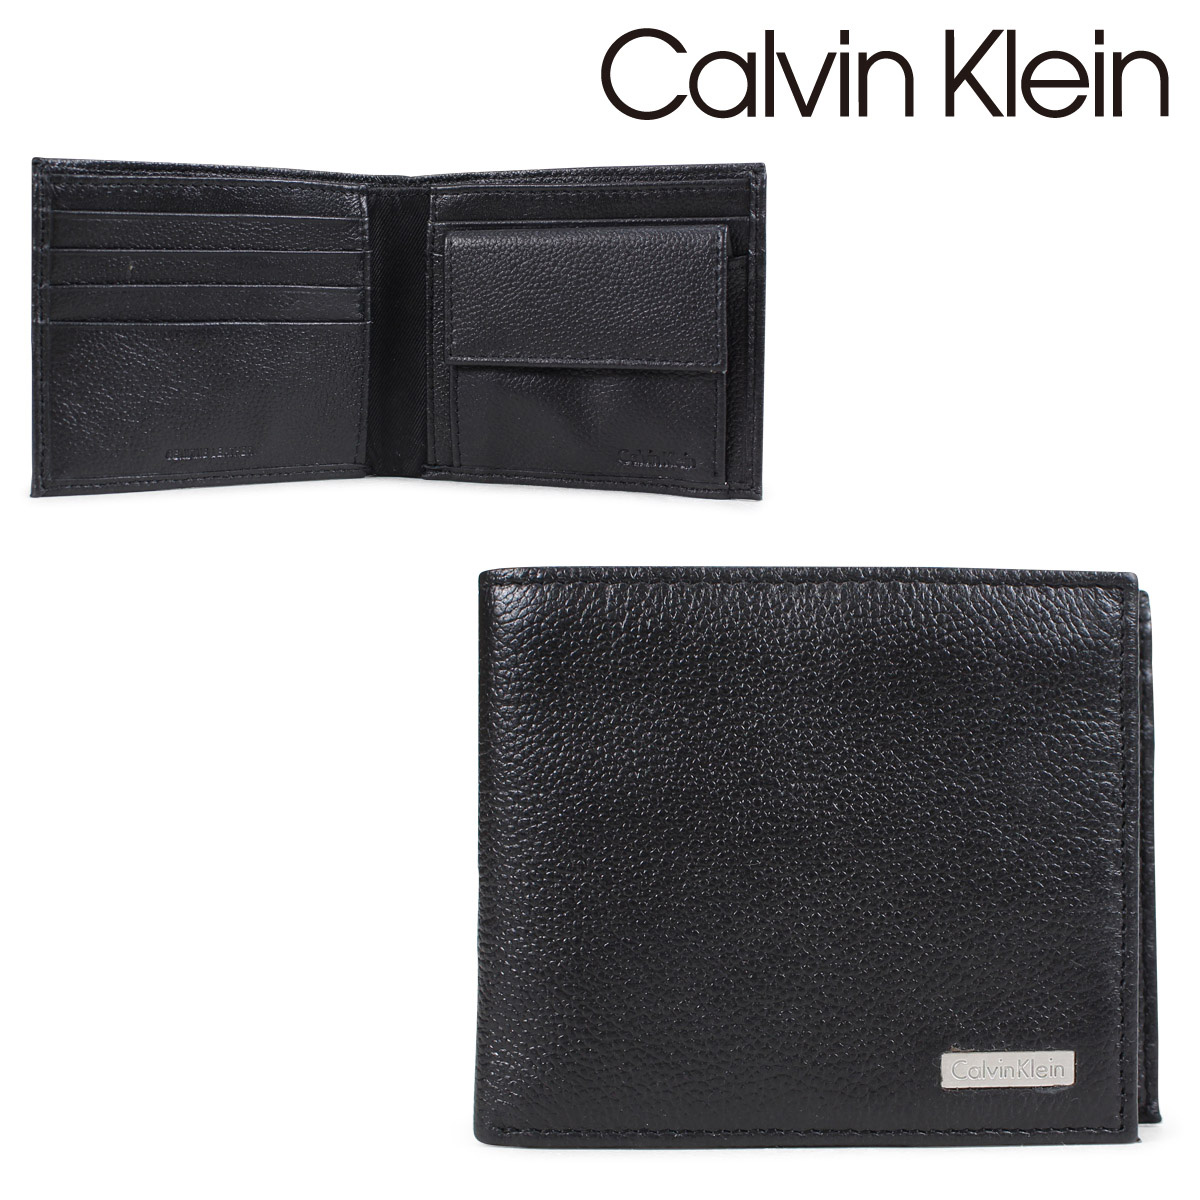 calvin klein coin purse